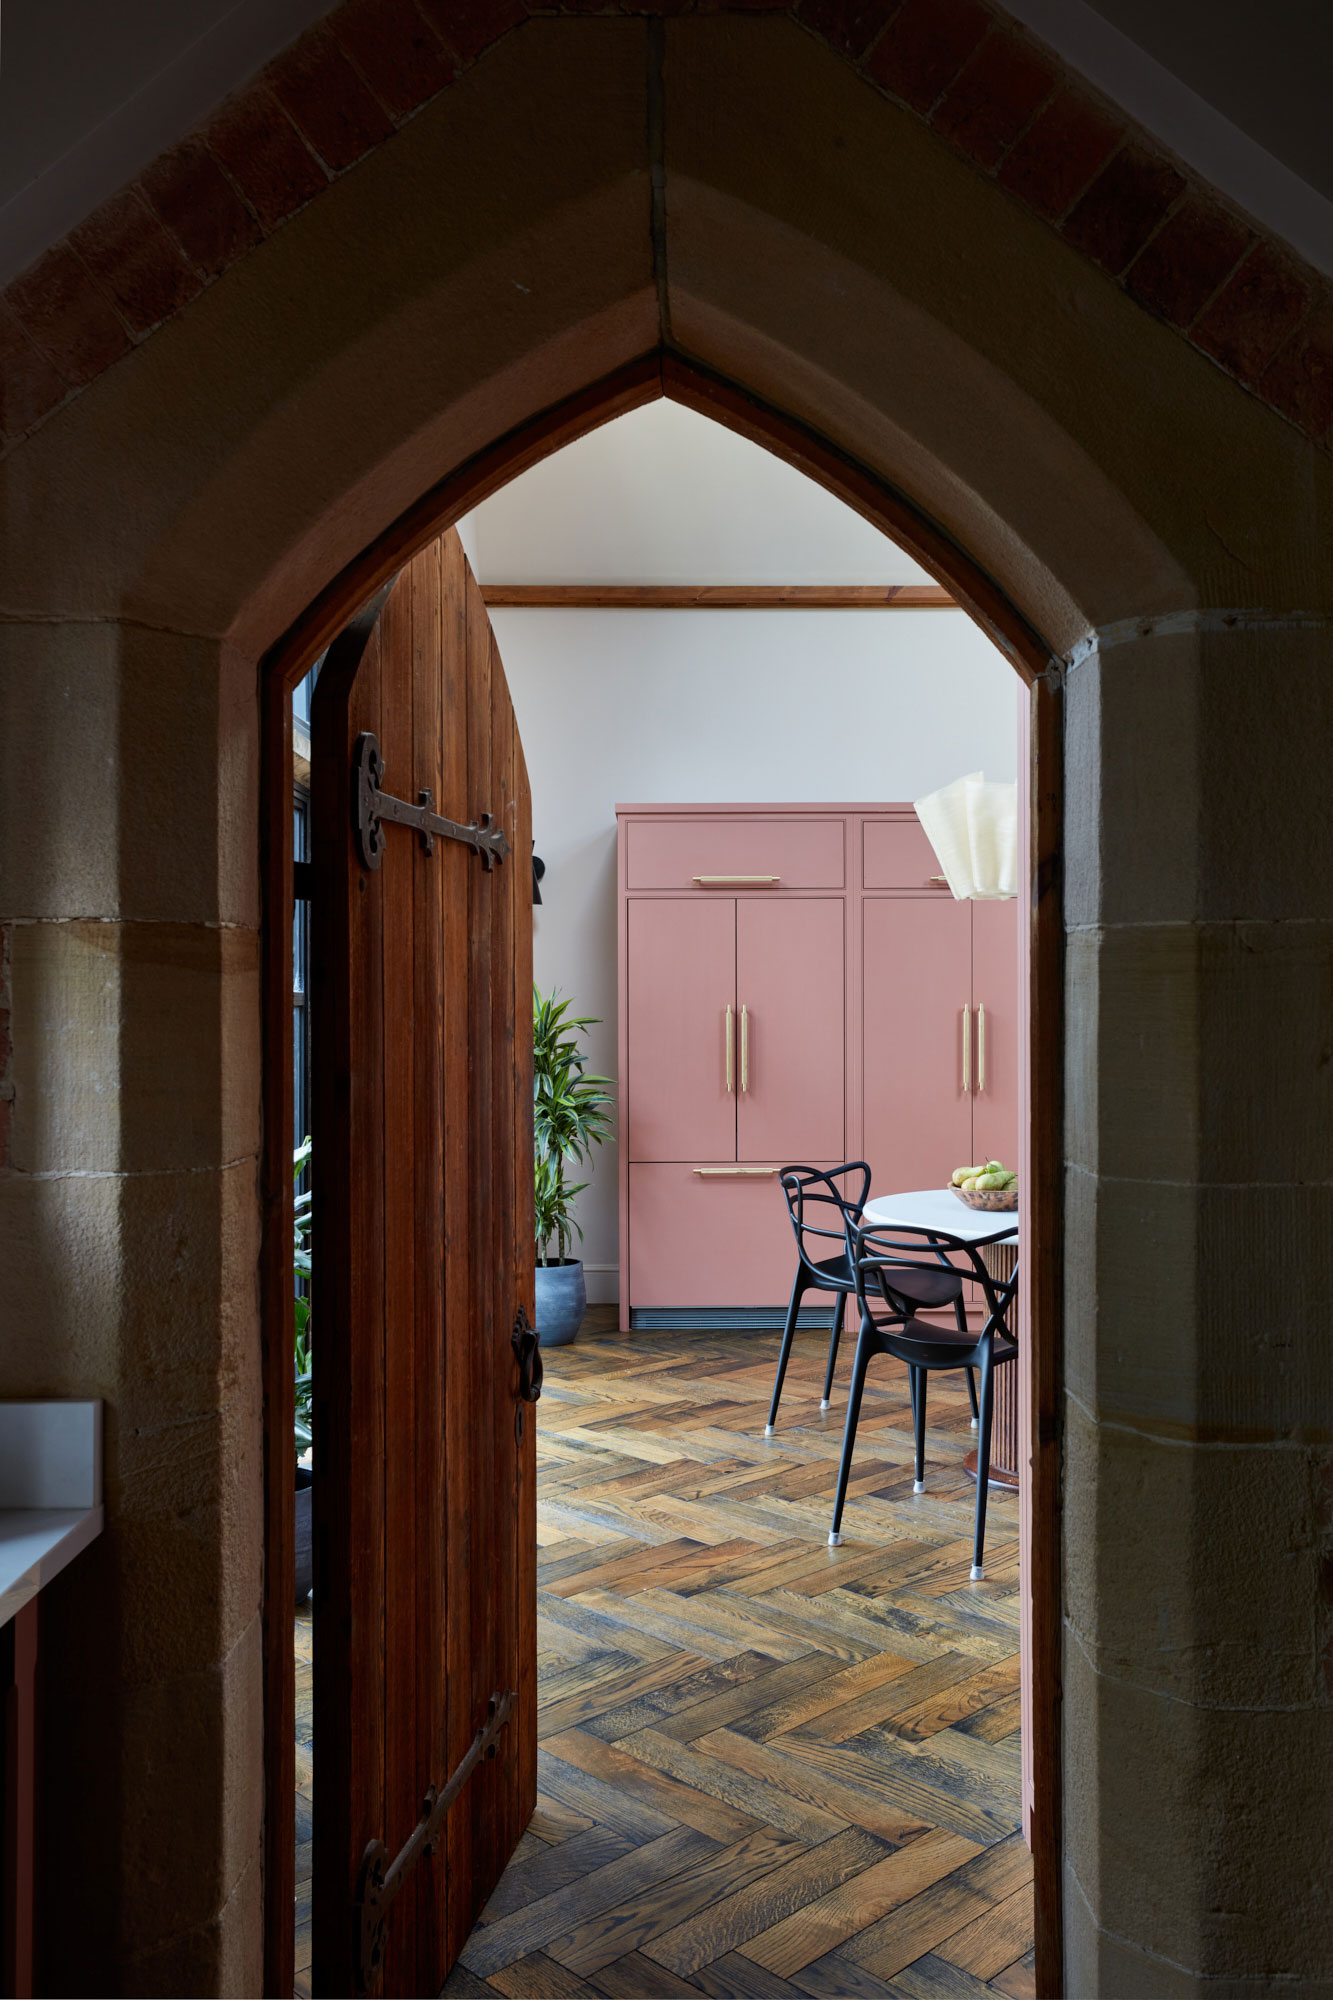 Entrance of kitchen through chapel door